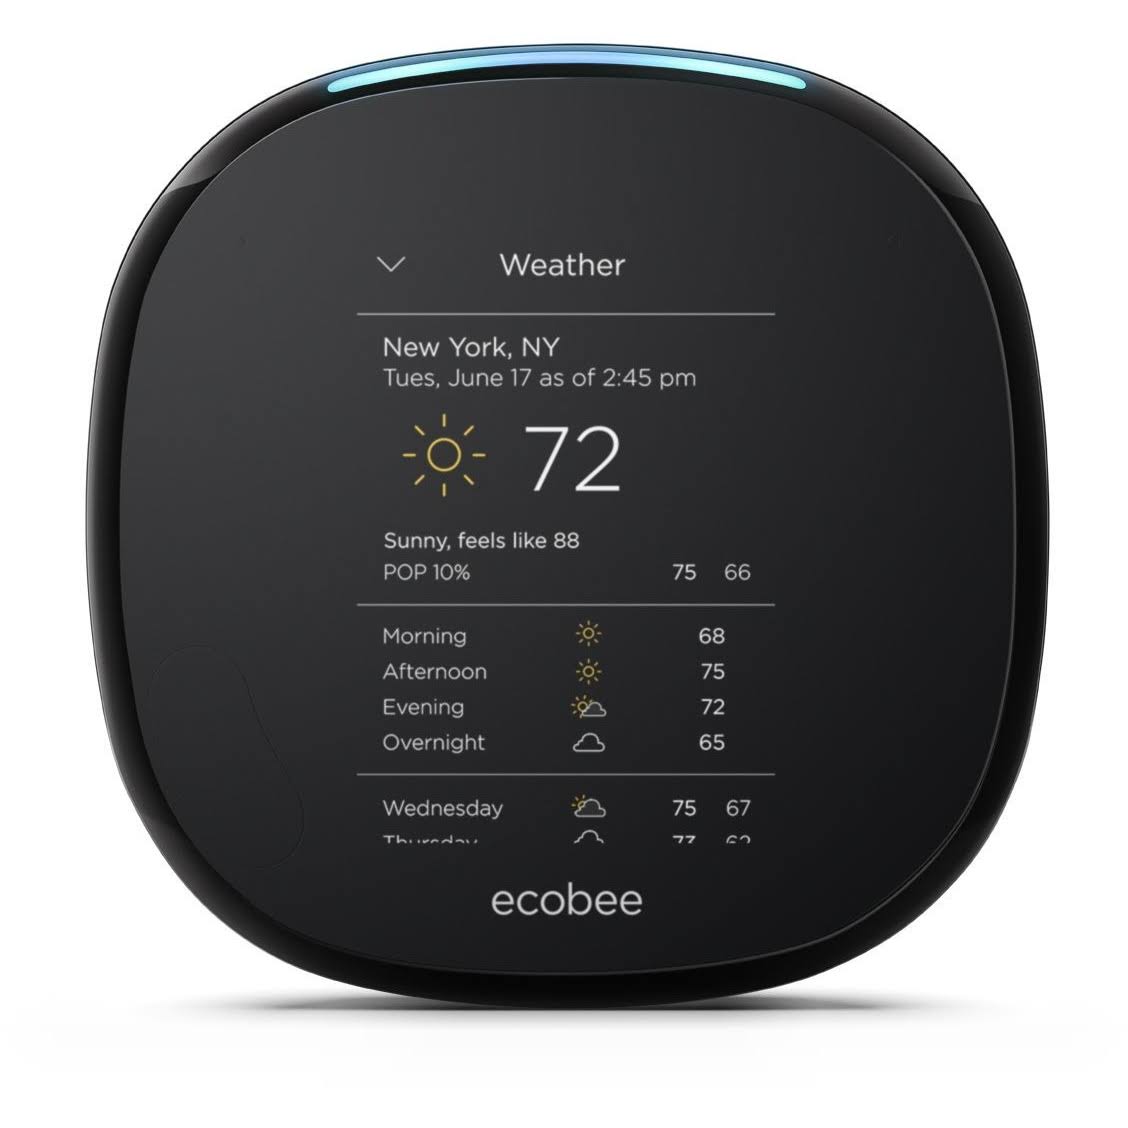 ecobee センサー付き Alexa 対応サーモスタット、Amazon Alexa と連携